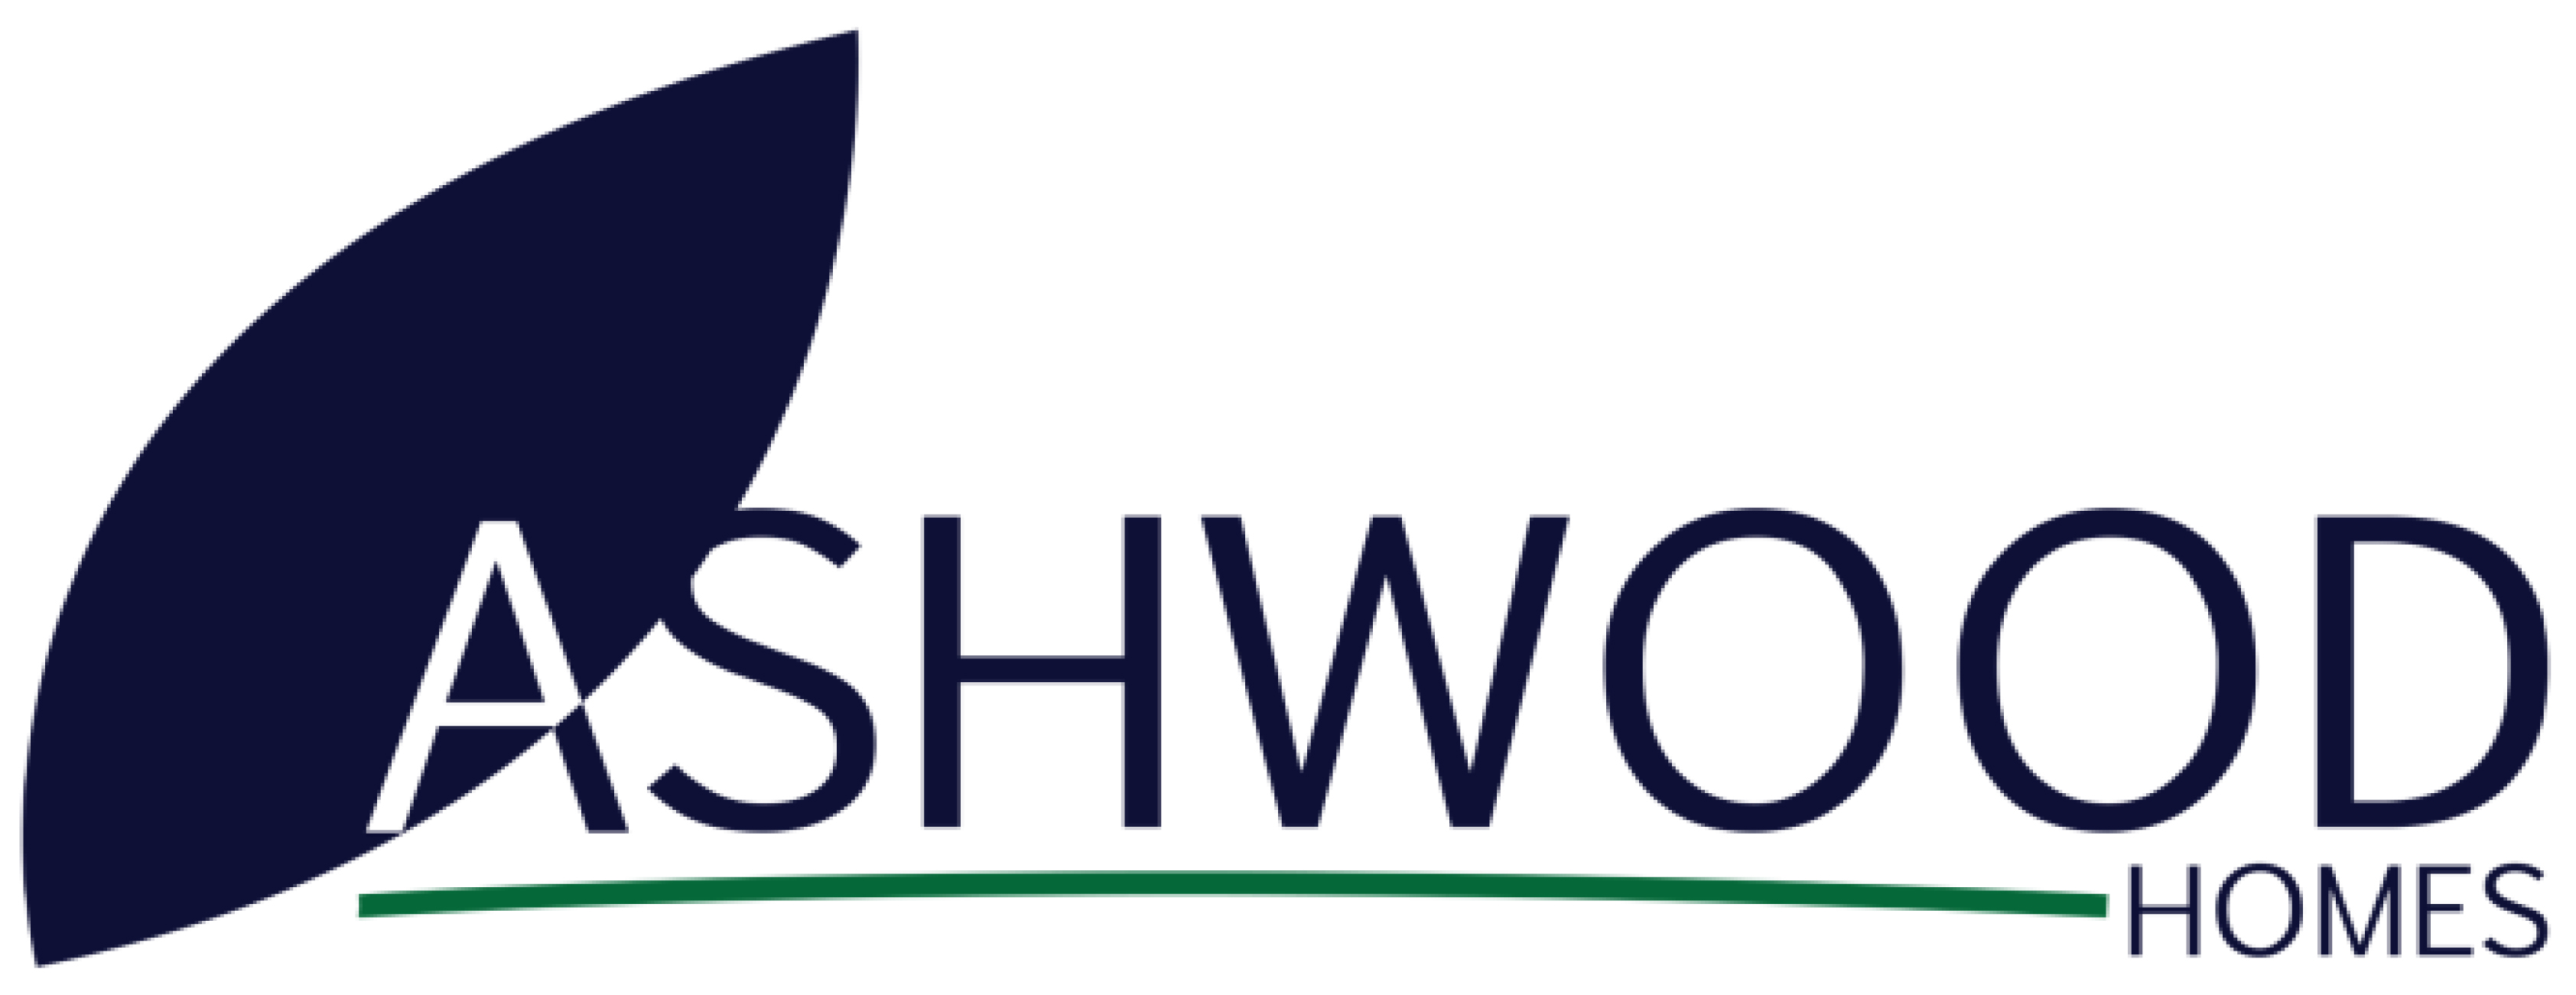 Ashwood-homes-logo